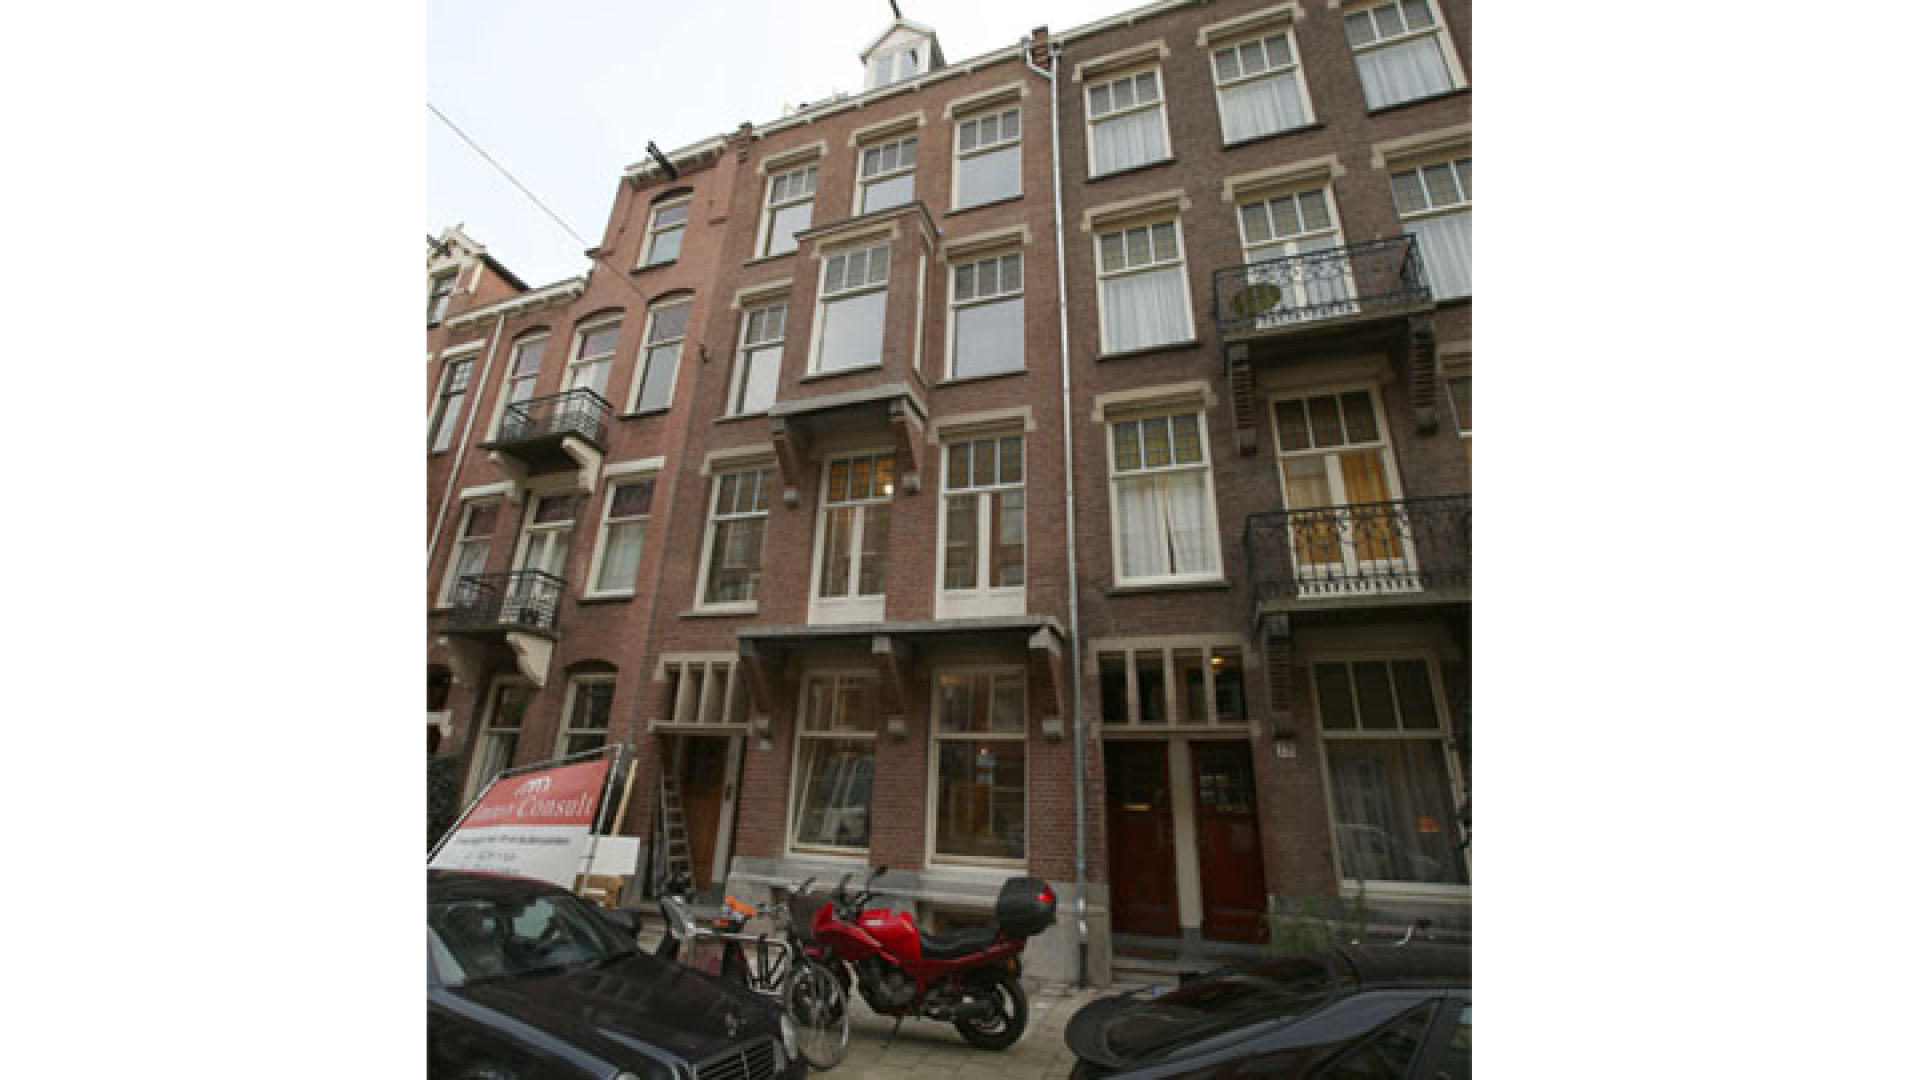 Doutzen Kroes koopt schitterend pand in Amsterdam Oud Zuid. Zie exclusieve foto's